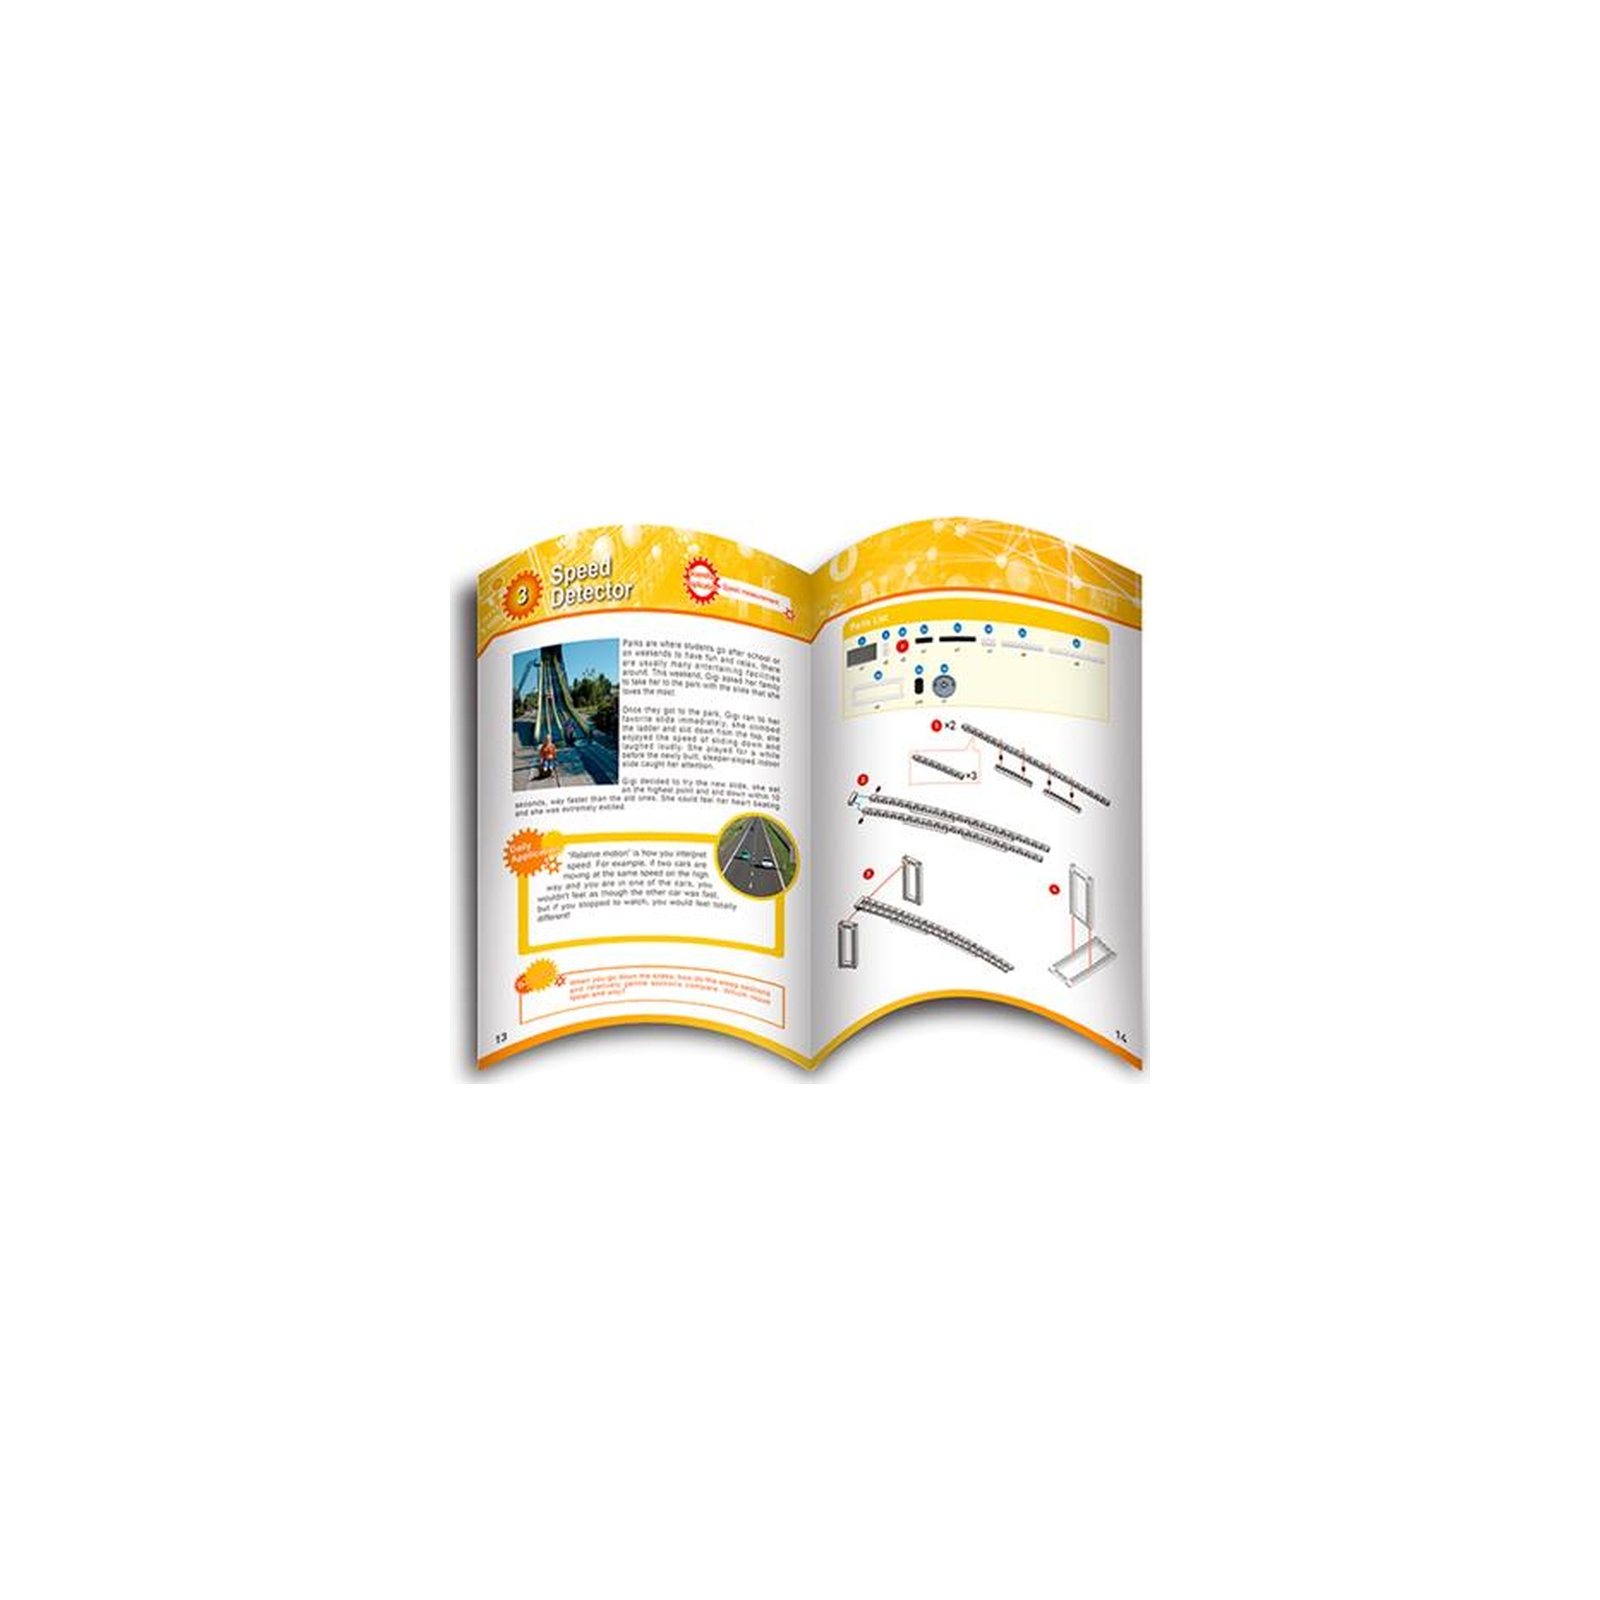 Навчальний набір Gigo Навчальний посібник до Набору для курсу навчання (R21-1240 UA)